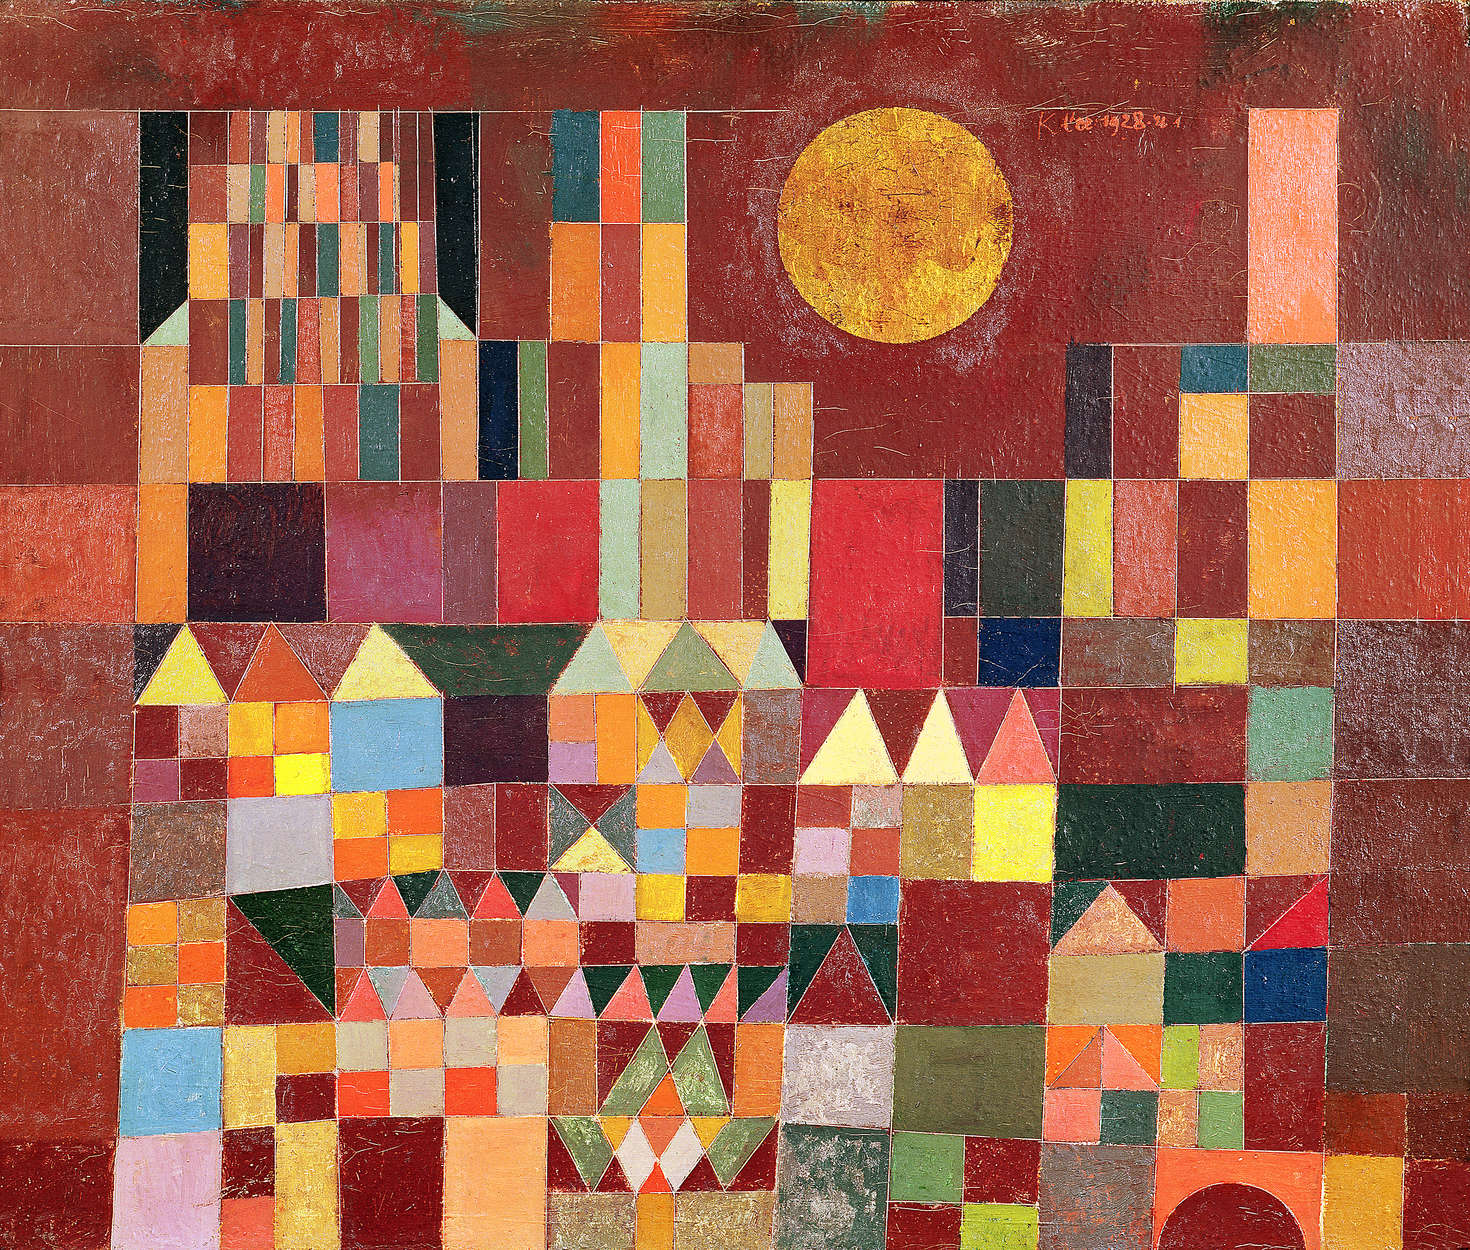             Papier peint panoramique "Château et soleil" de Paul Klee
        